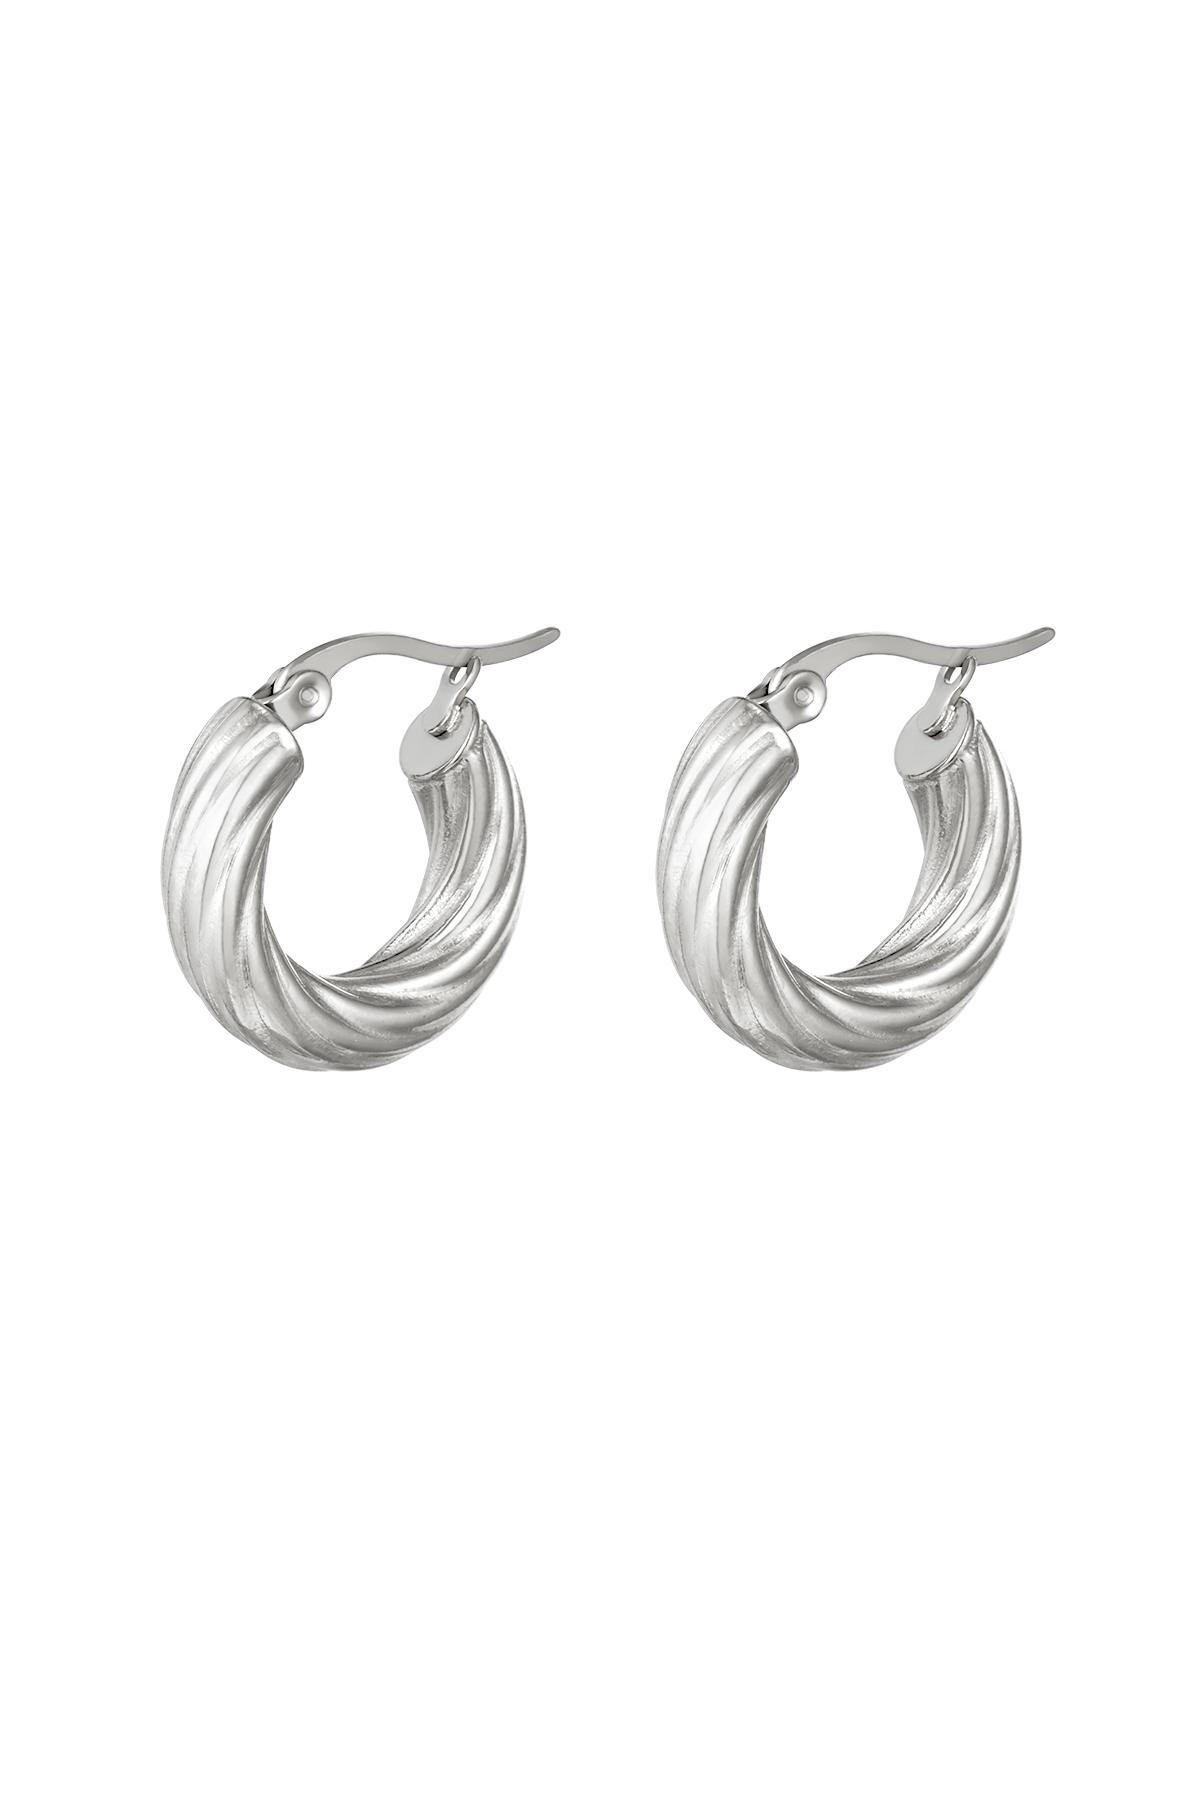 Earrings Curly Hoops Silver Stainless Steel h5 